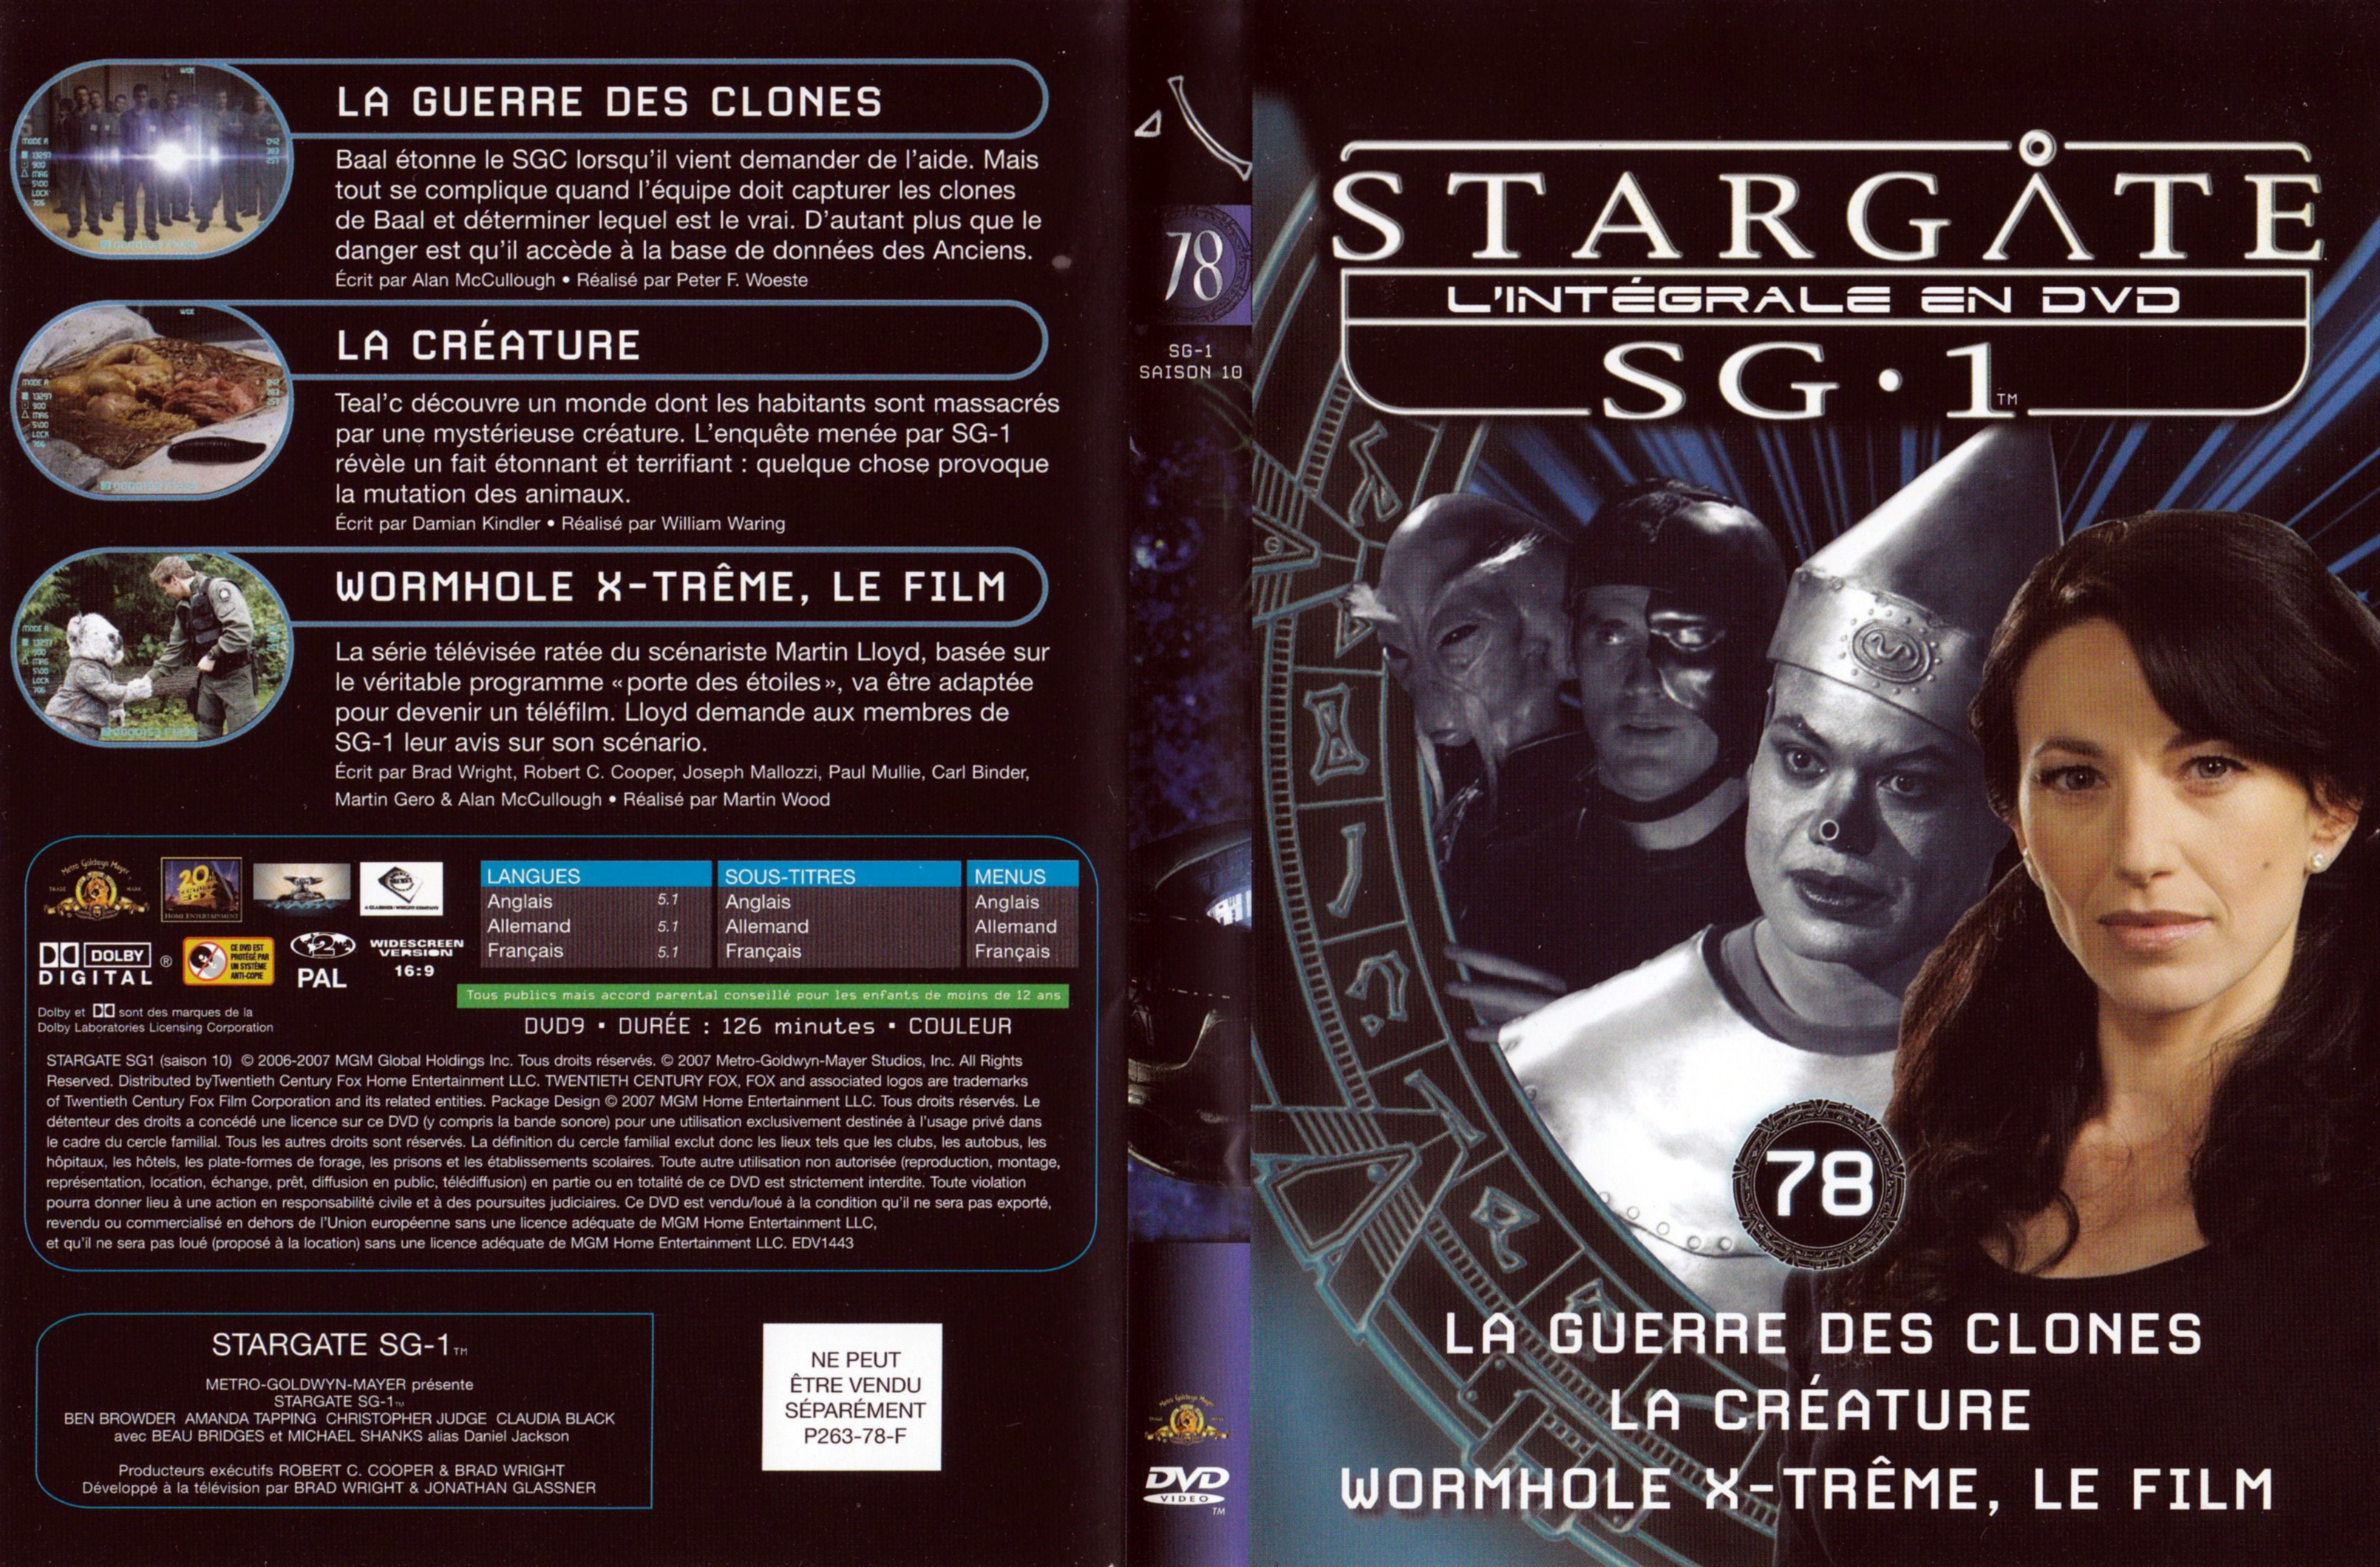 Jaquette DVD Stargate SG1 Intgrale Saison 10 vol 78